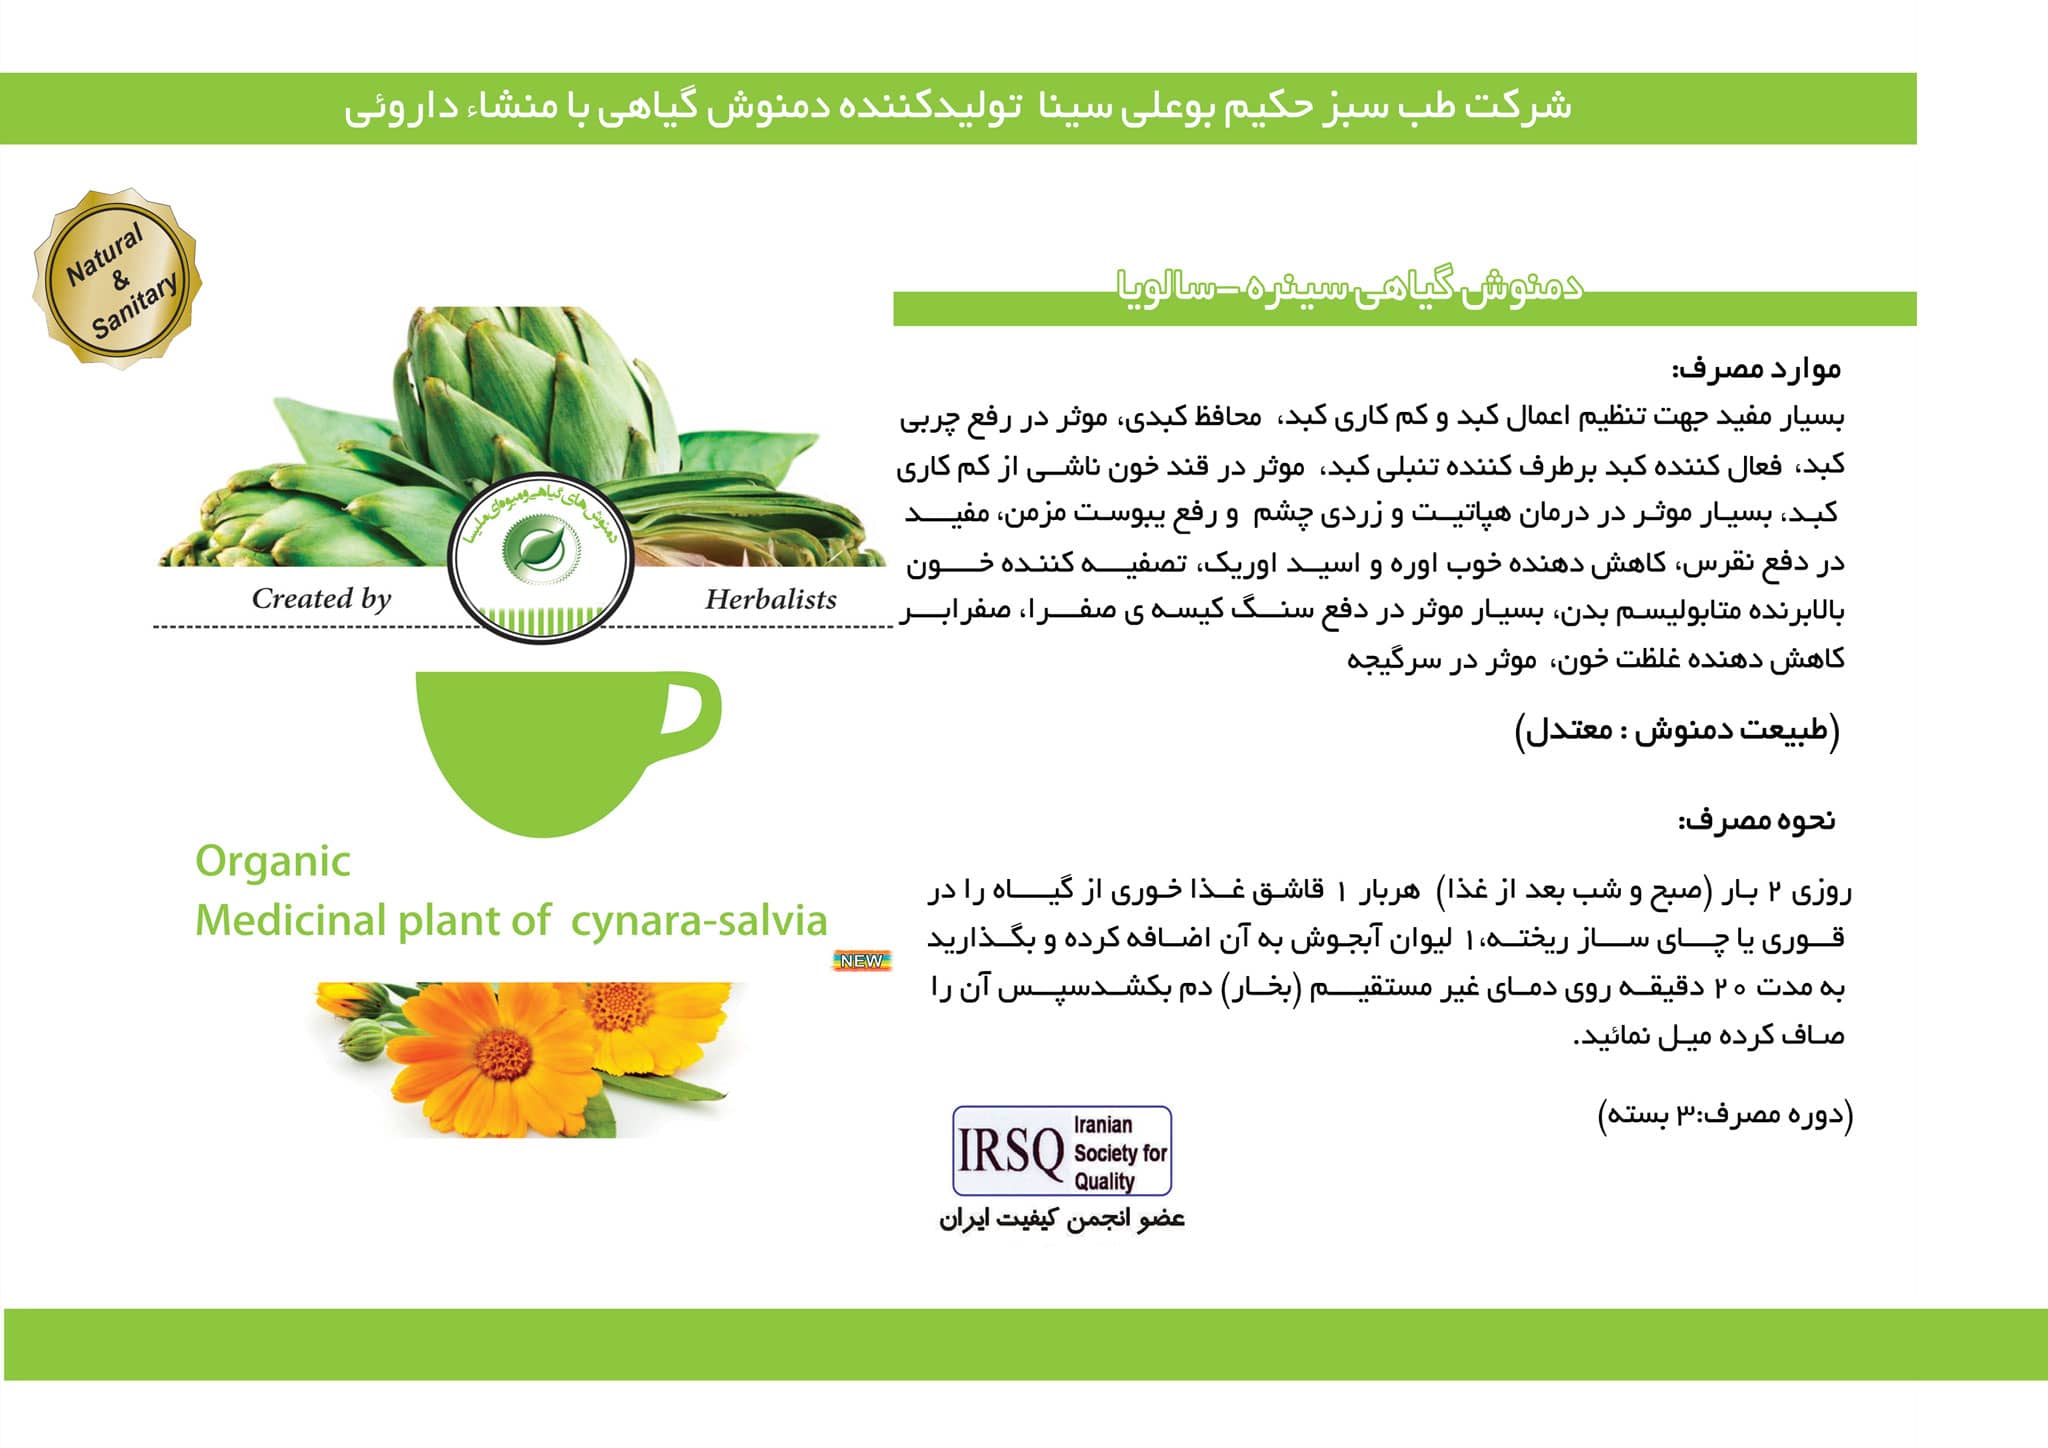 دمنوش گیاهی سینره - سالویا(رفع چربی کبد و کبد چرب ،رفع یبوست مزمن ، درمان قند خون ناشی از کم کاری کبد)